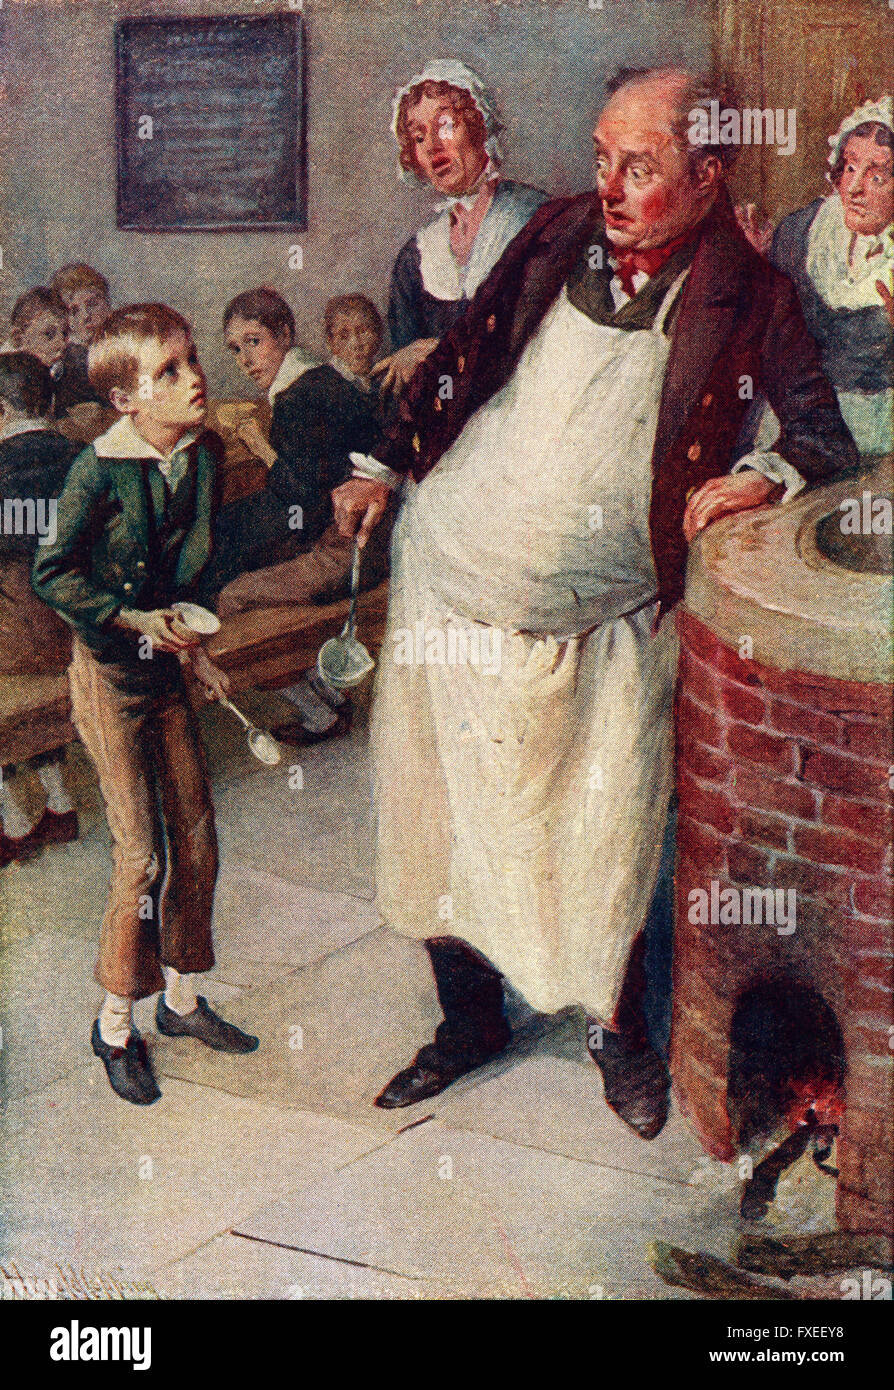 Oliver Twist bittet um mehr. Illustration von Harold Copping. Stockfoto